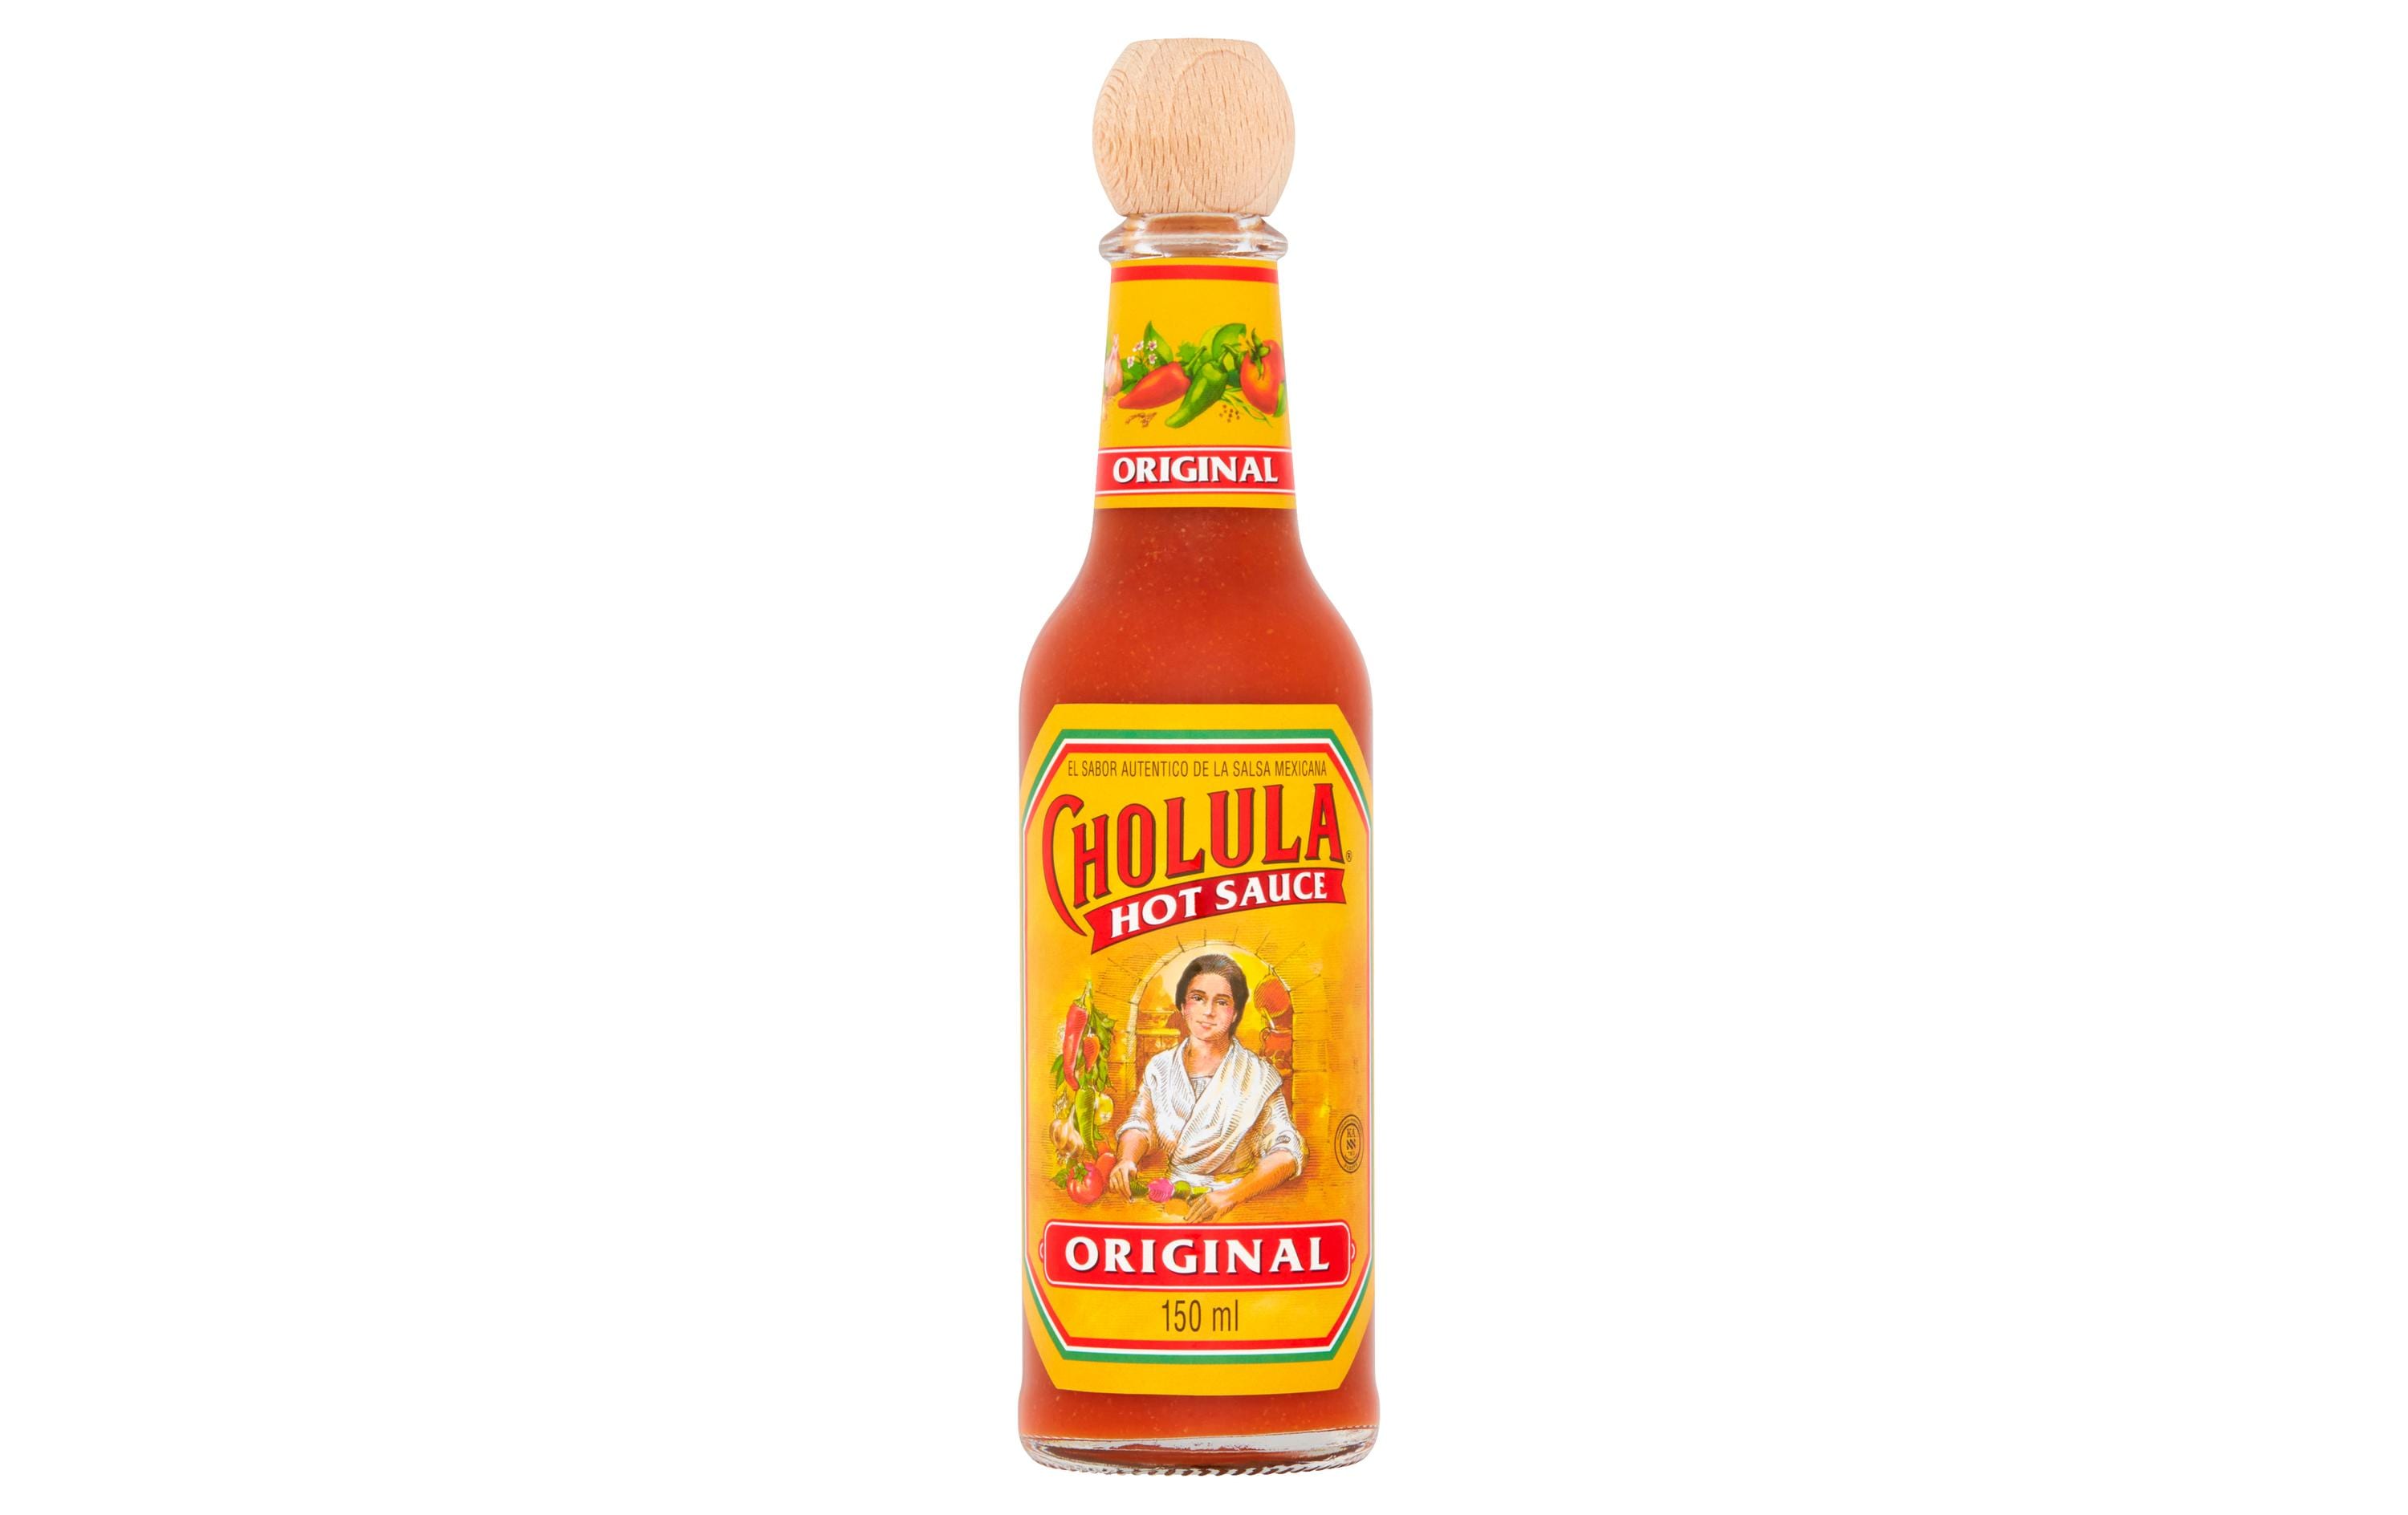 Cholula Hot Sauce Original 150 ml